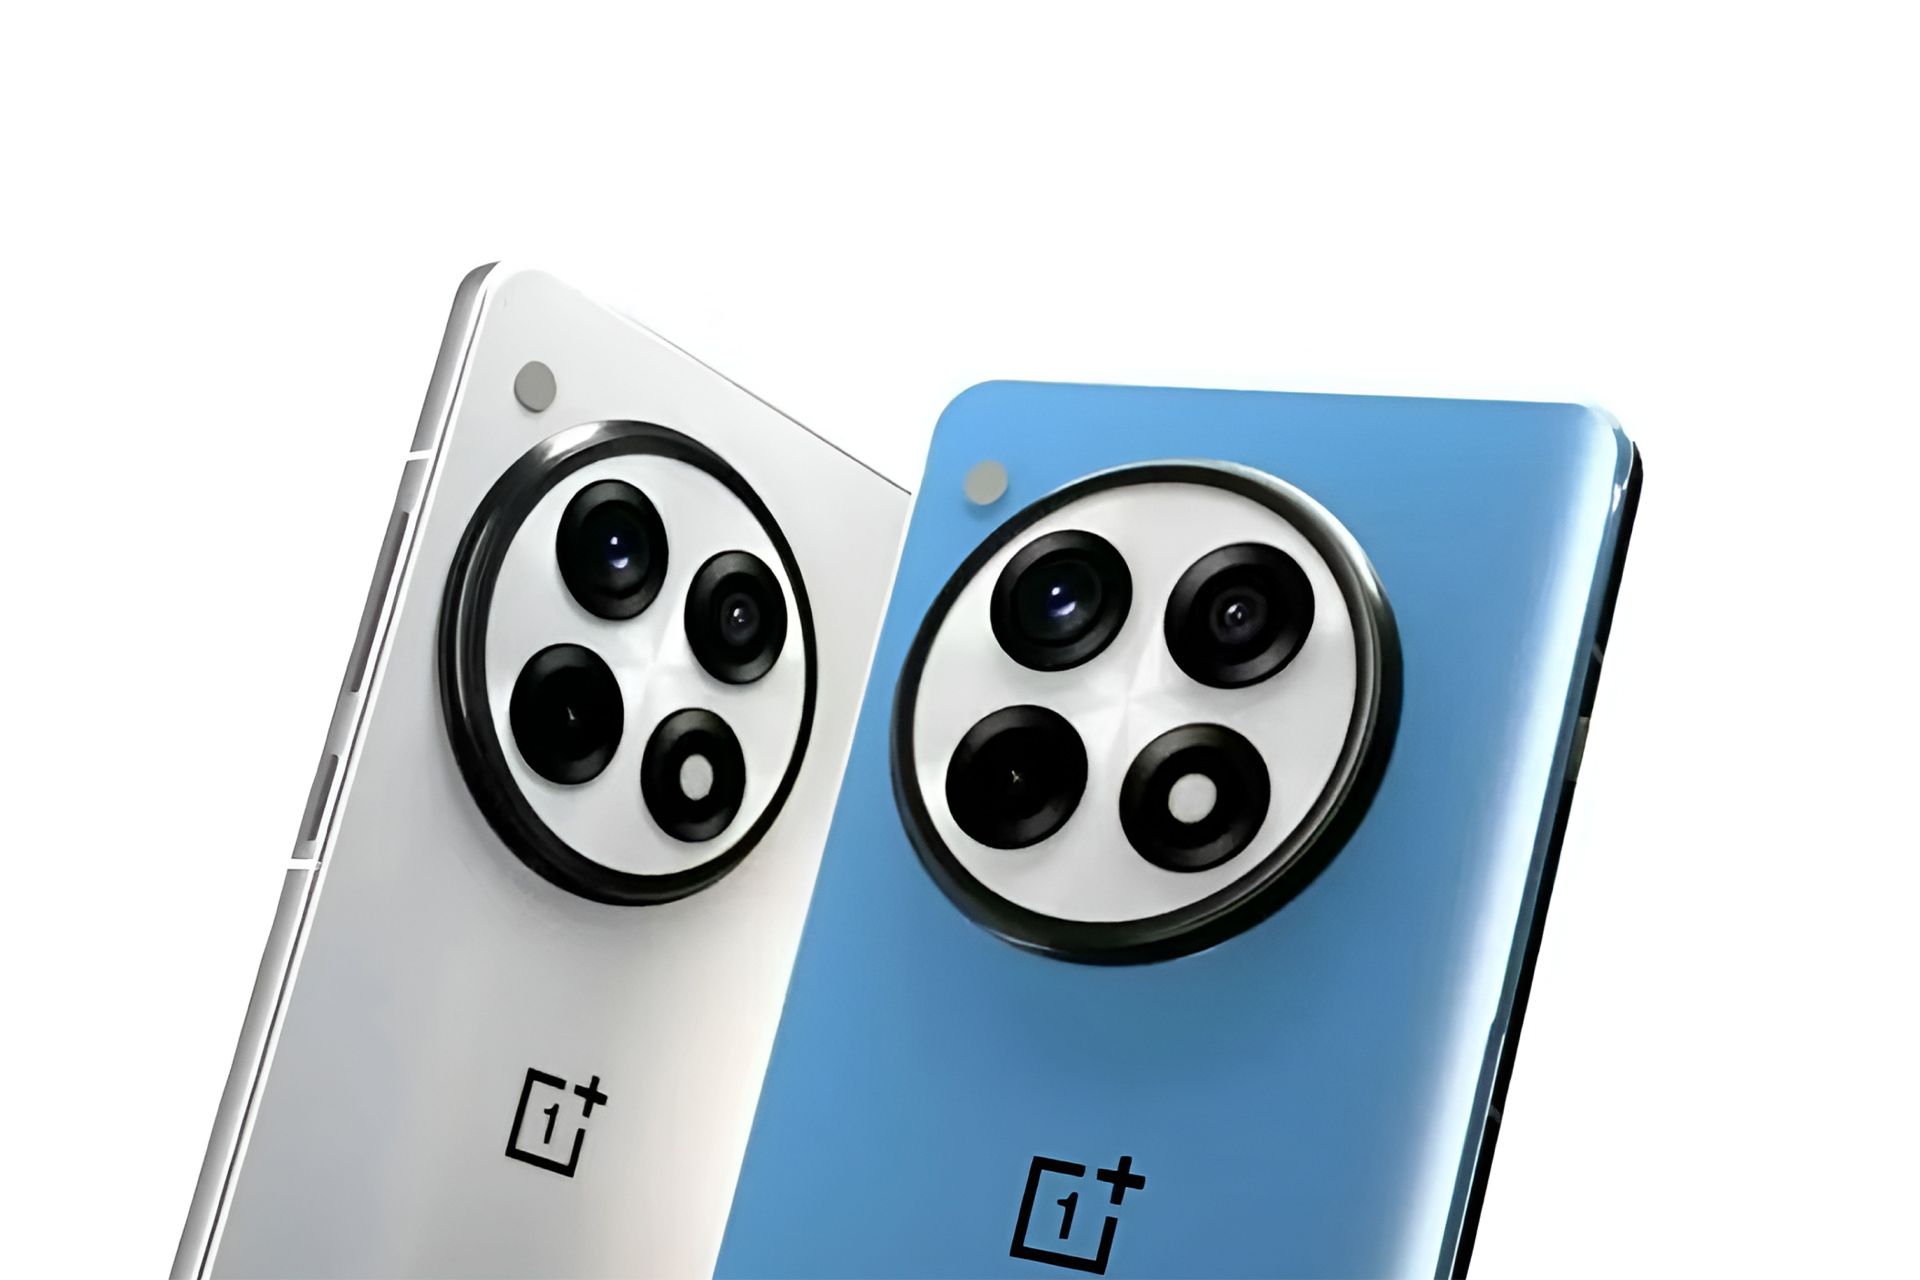 تصویر فاش‌شده از پنل پشتی گوشی وان‌پلاس مدل Ace 3 Pro در دو رنگ آبی و سفید